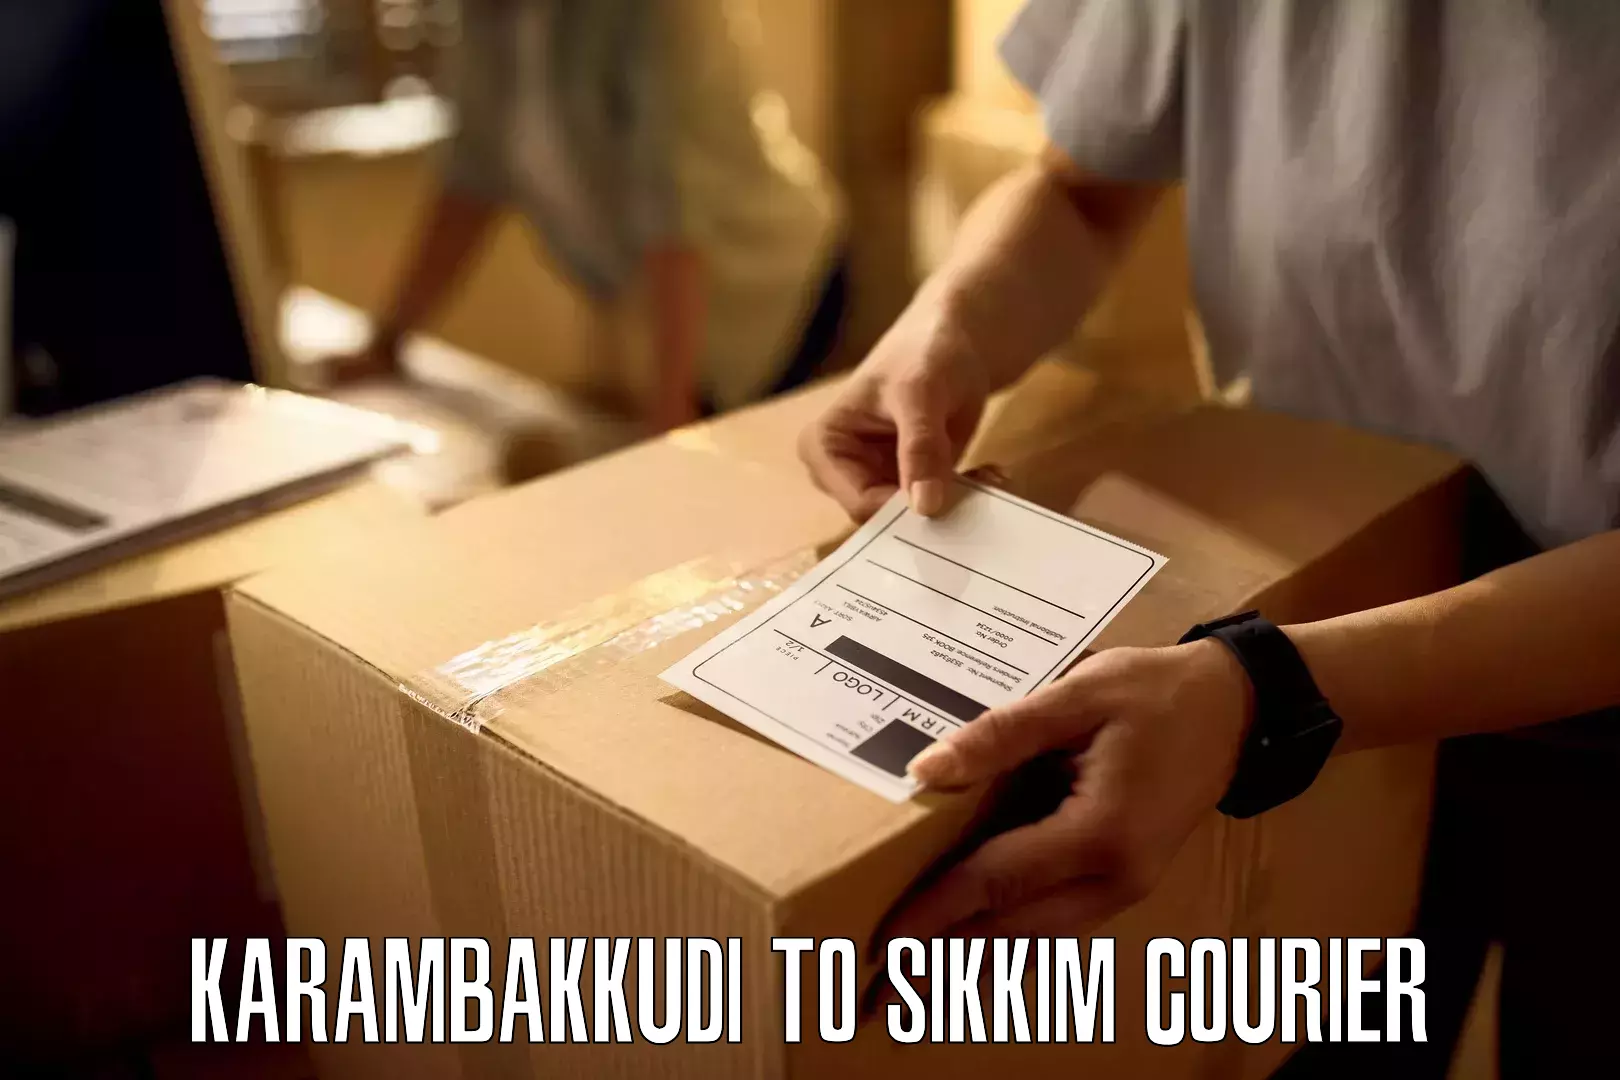 Courier service booking Karambakkudi to Singtam